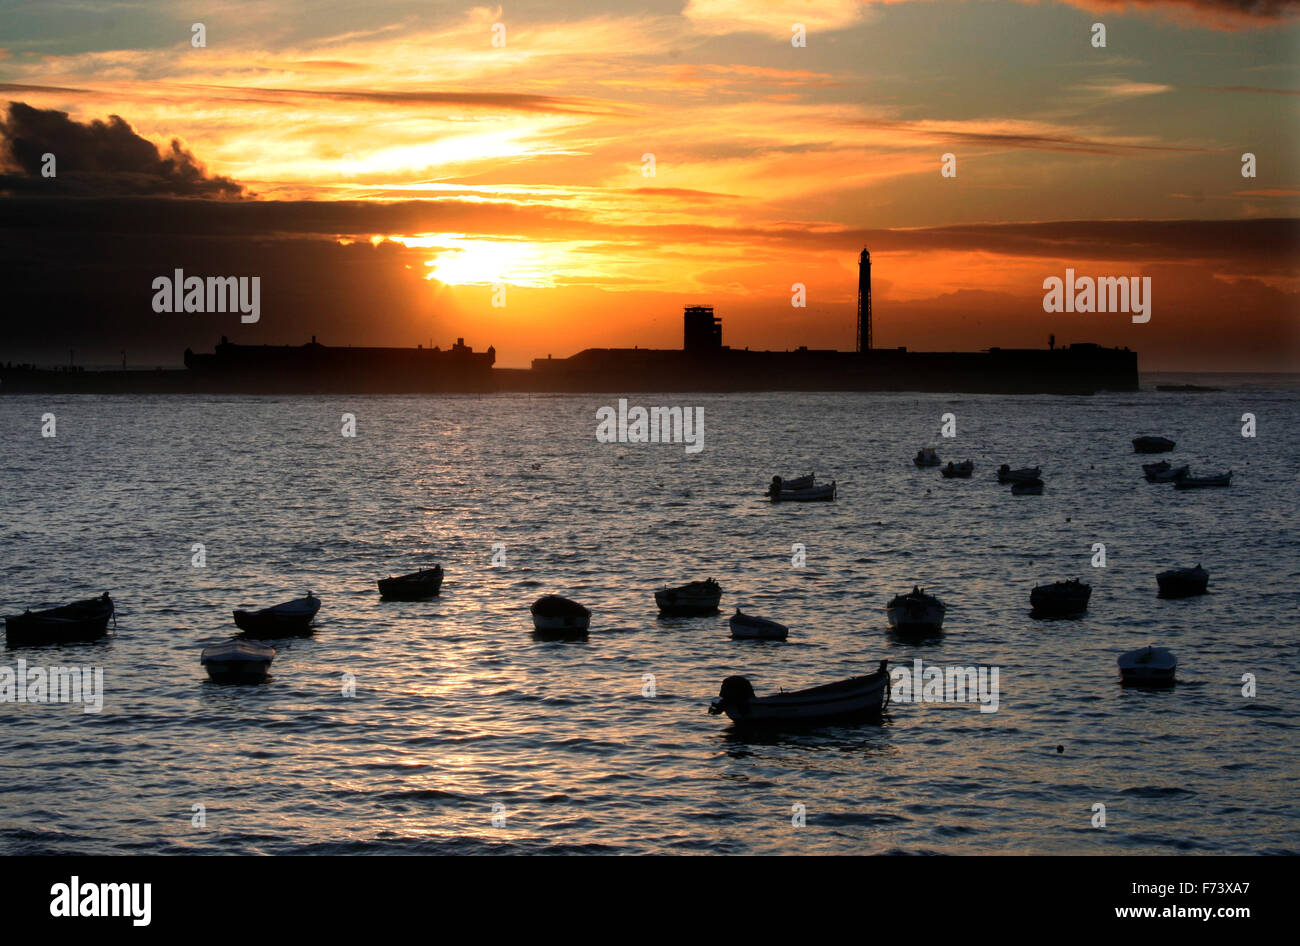 Sunset on Caleta Beach, Cadiz, Spain Stock Photo